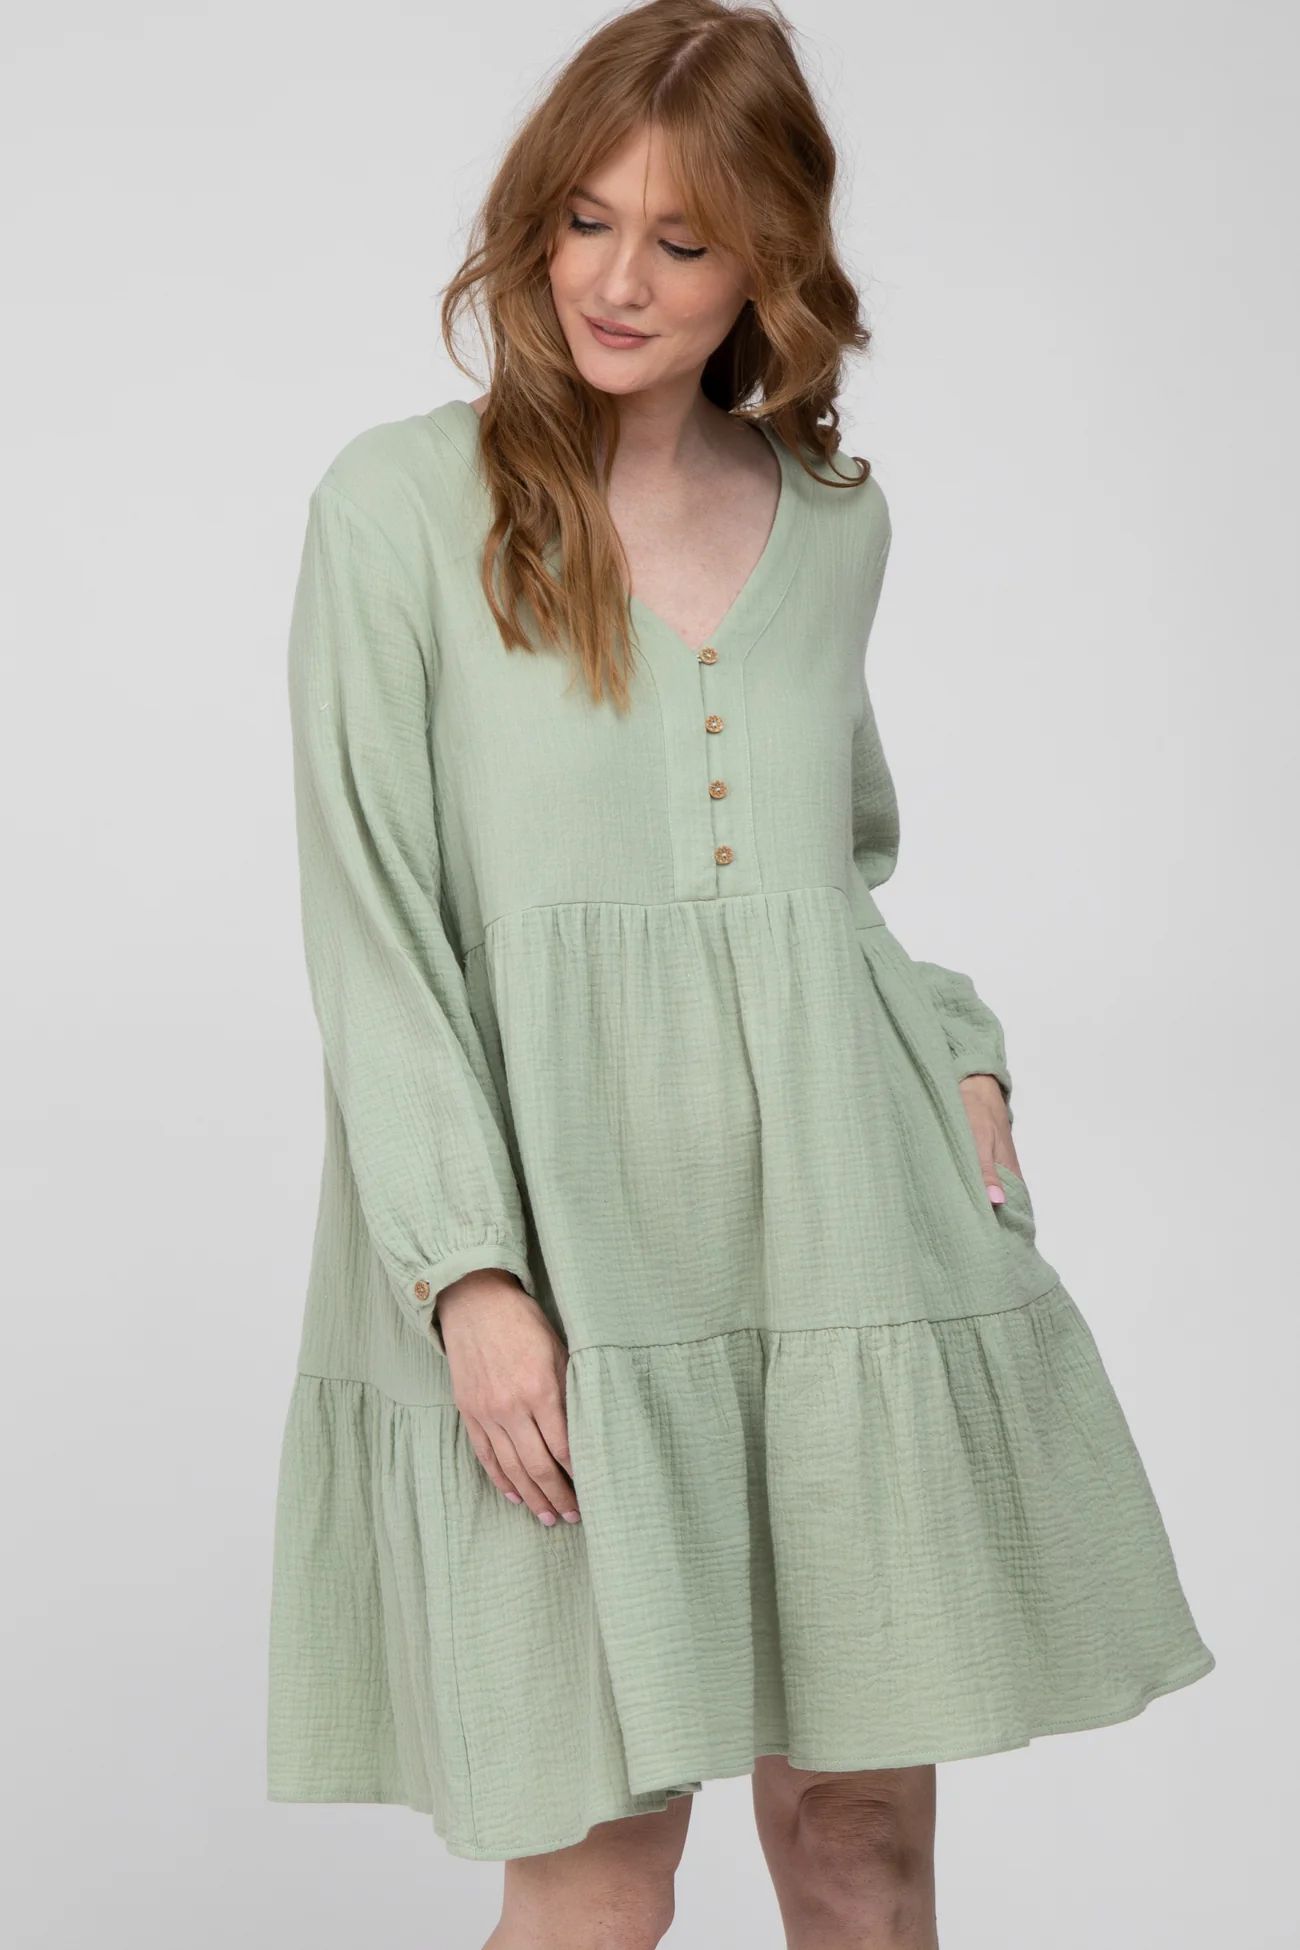 Mint Ruffle Tiered Long Sleeve Dress | PinkBlush Maternity